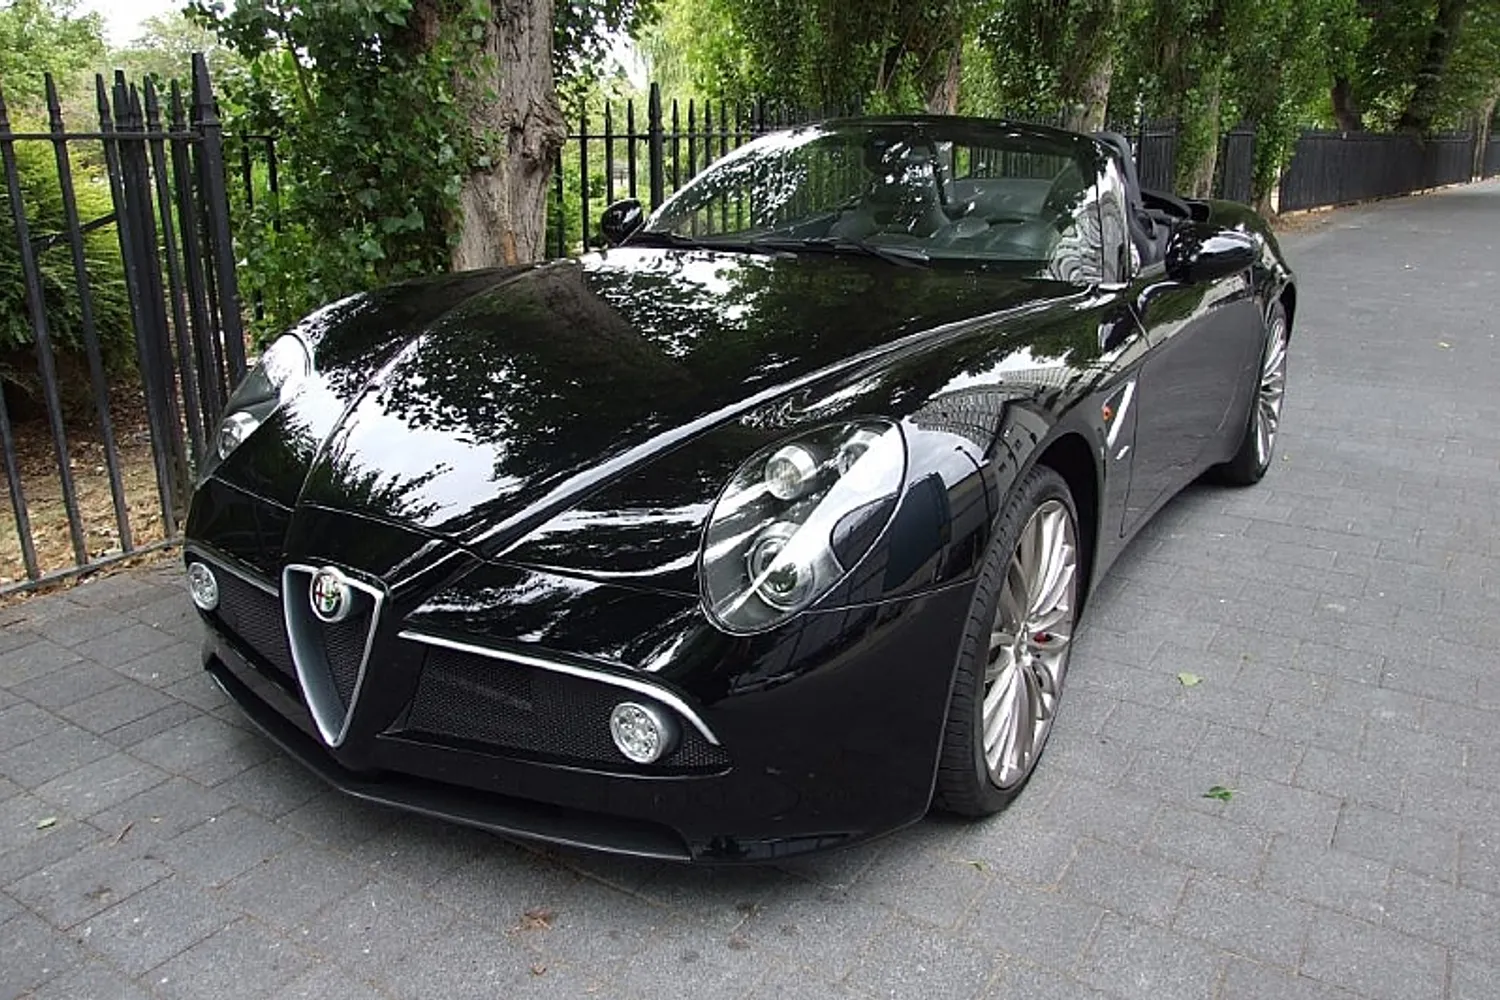 2010 Alfa Romeo 8C Competizione Spider